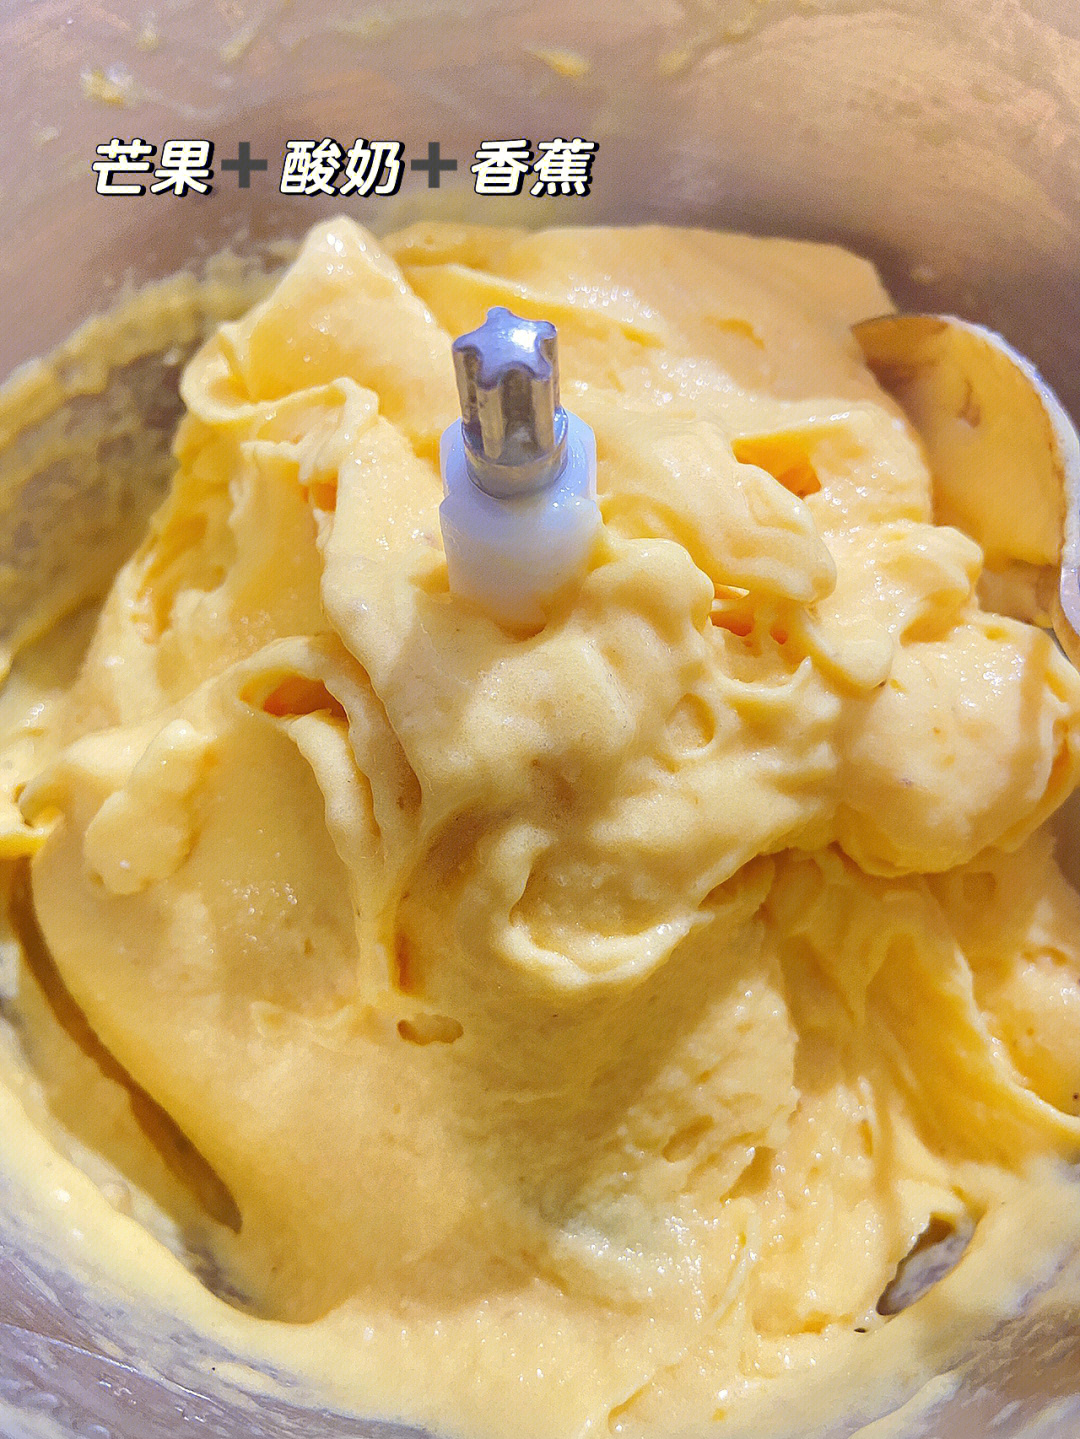 自制芒果酸奶冰淇淋值得一试